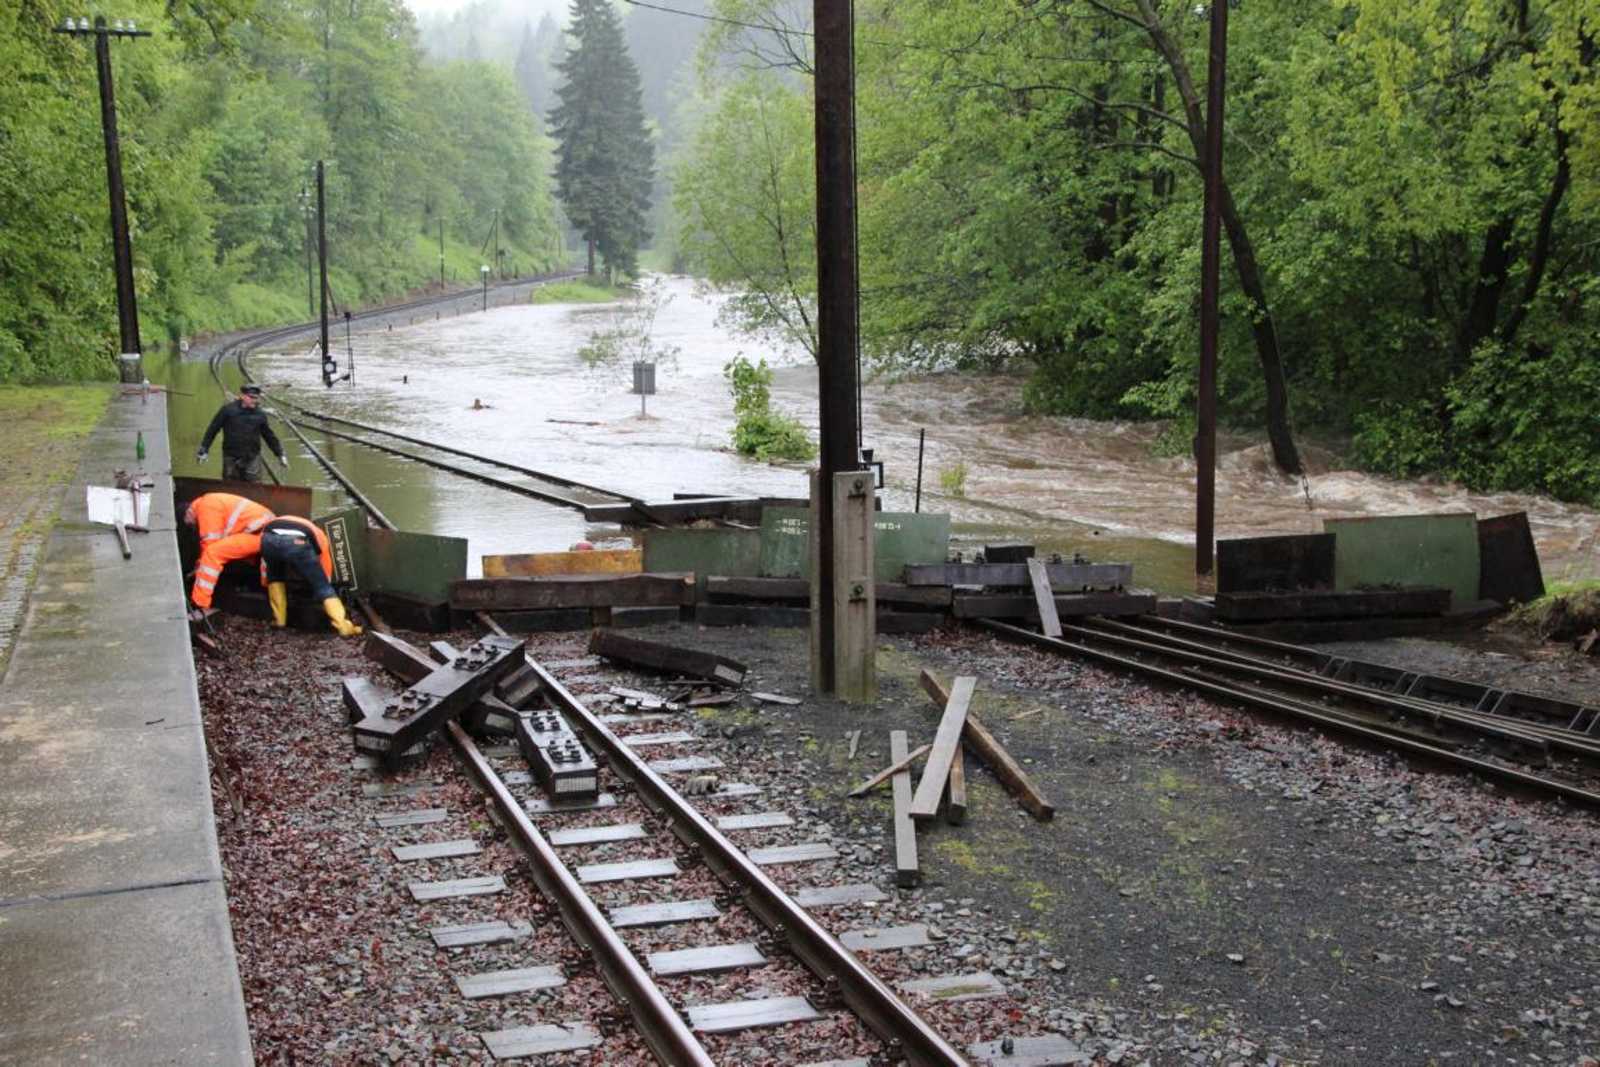 Von Vereinsmitgliedern wurde an der Einfahrt zum Bahnhof Steinbach eine Barriere errichtet, die das Anschwemmen von Treibgut und Unrat in den Bahnhof verhindern sollte. 2. Juni 2013 gegen 15.30 Uhr.